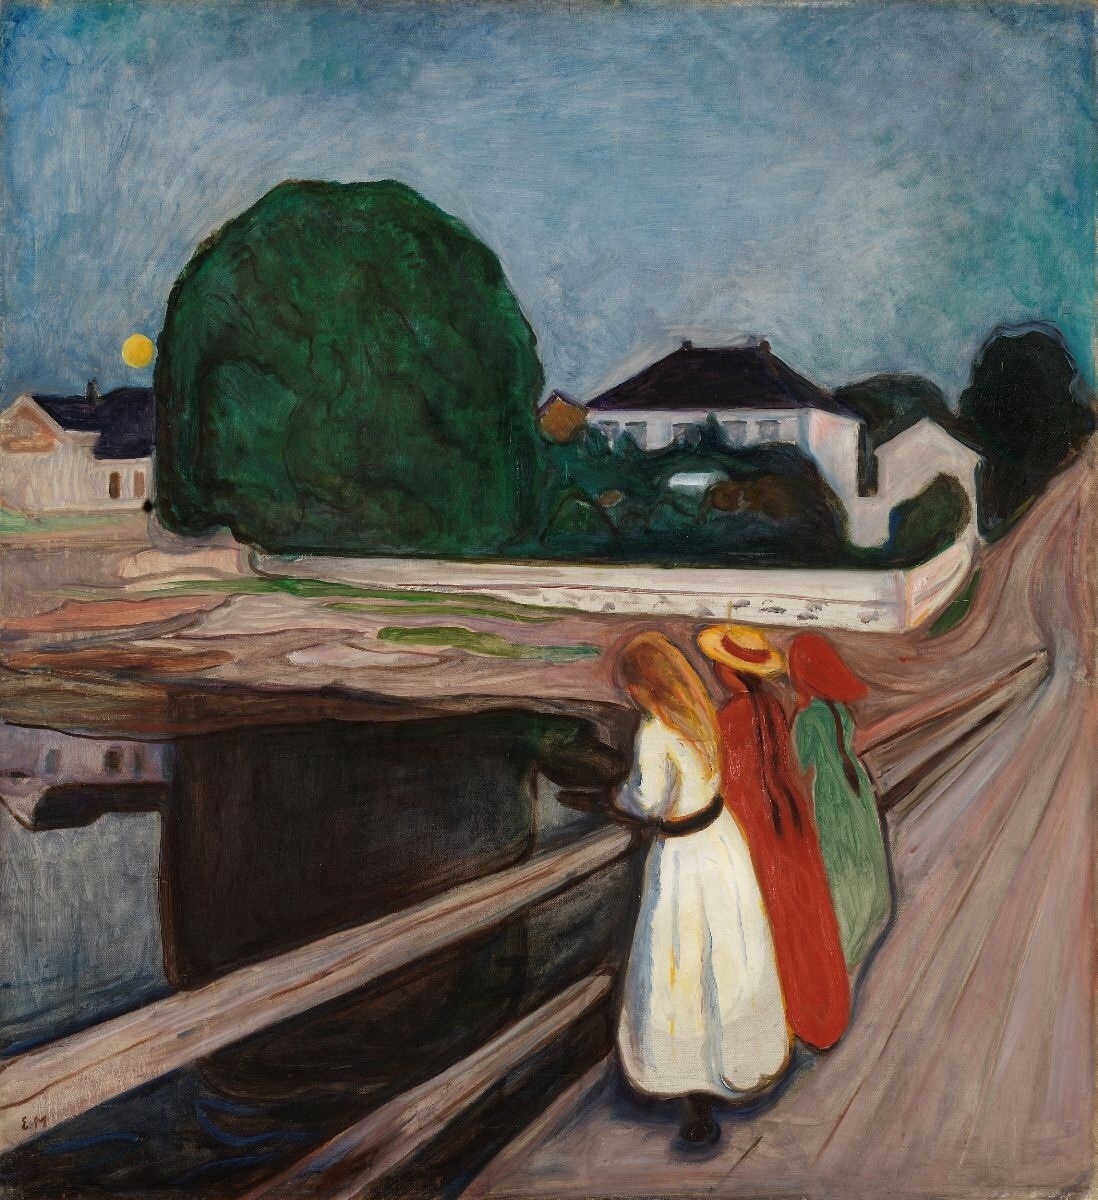 Dilukis pada tahun 1902 dengan warna-warna cerah, dan menggambarkan pemandangan di luar ruangan - tidak seperti banyak karyanya yang lain - banyak yang menganggap karya ini sebagai salah satu yang terbaik dari Munch, oleh karena itu harganya yang mahal menjadikannya sebagai salah satu lukisan termahal di dunia yang pernah terjual pada tahun 2024.